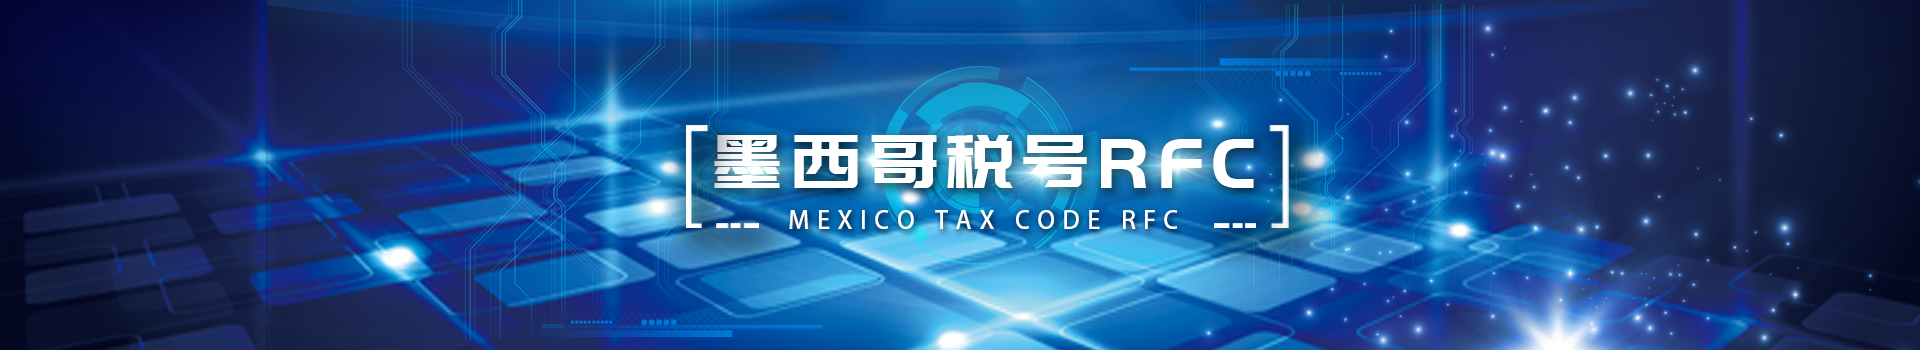 墨西哥税号RFC